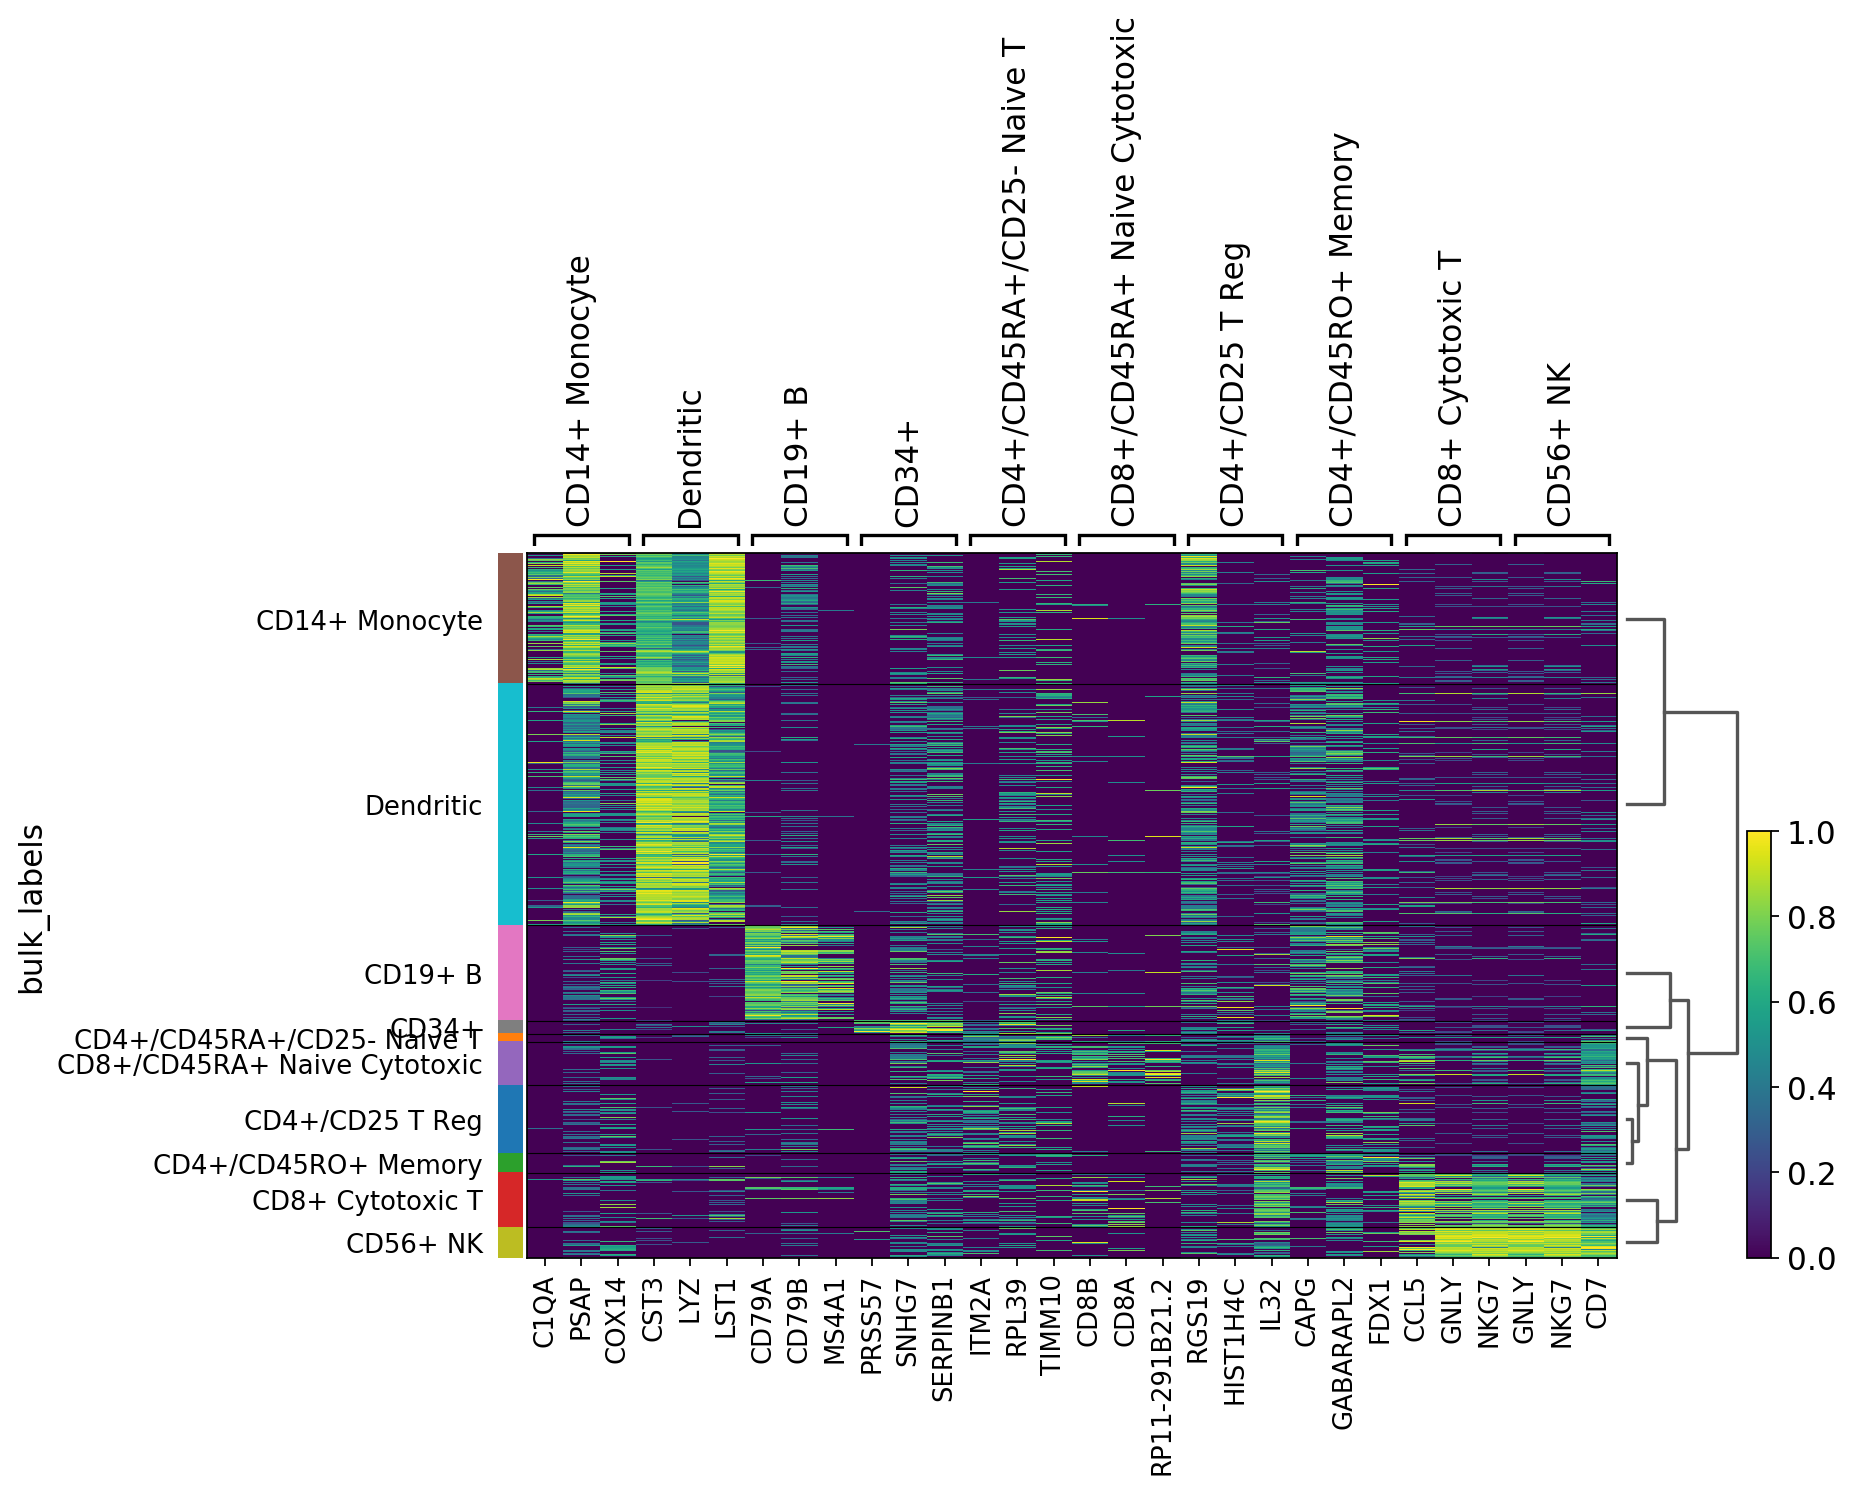 _images/visualizing-marker-genes_64_0.png